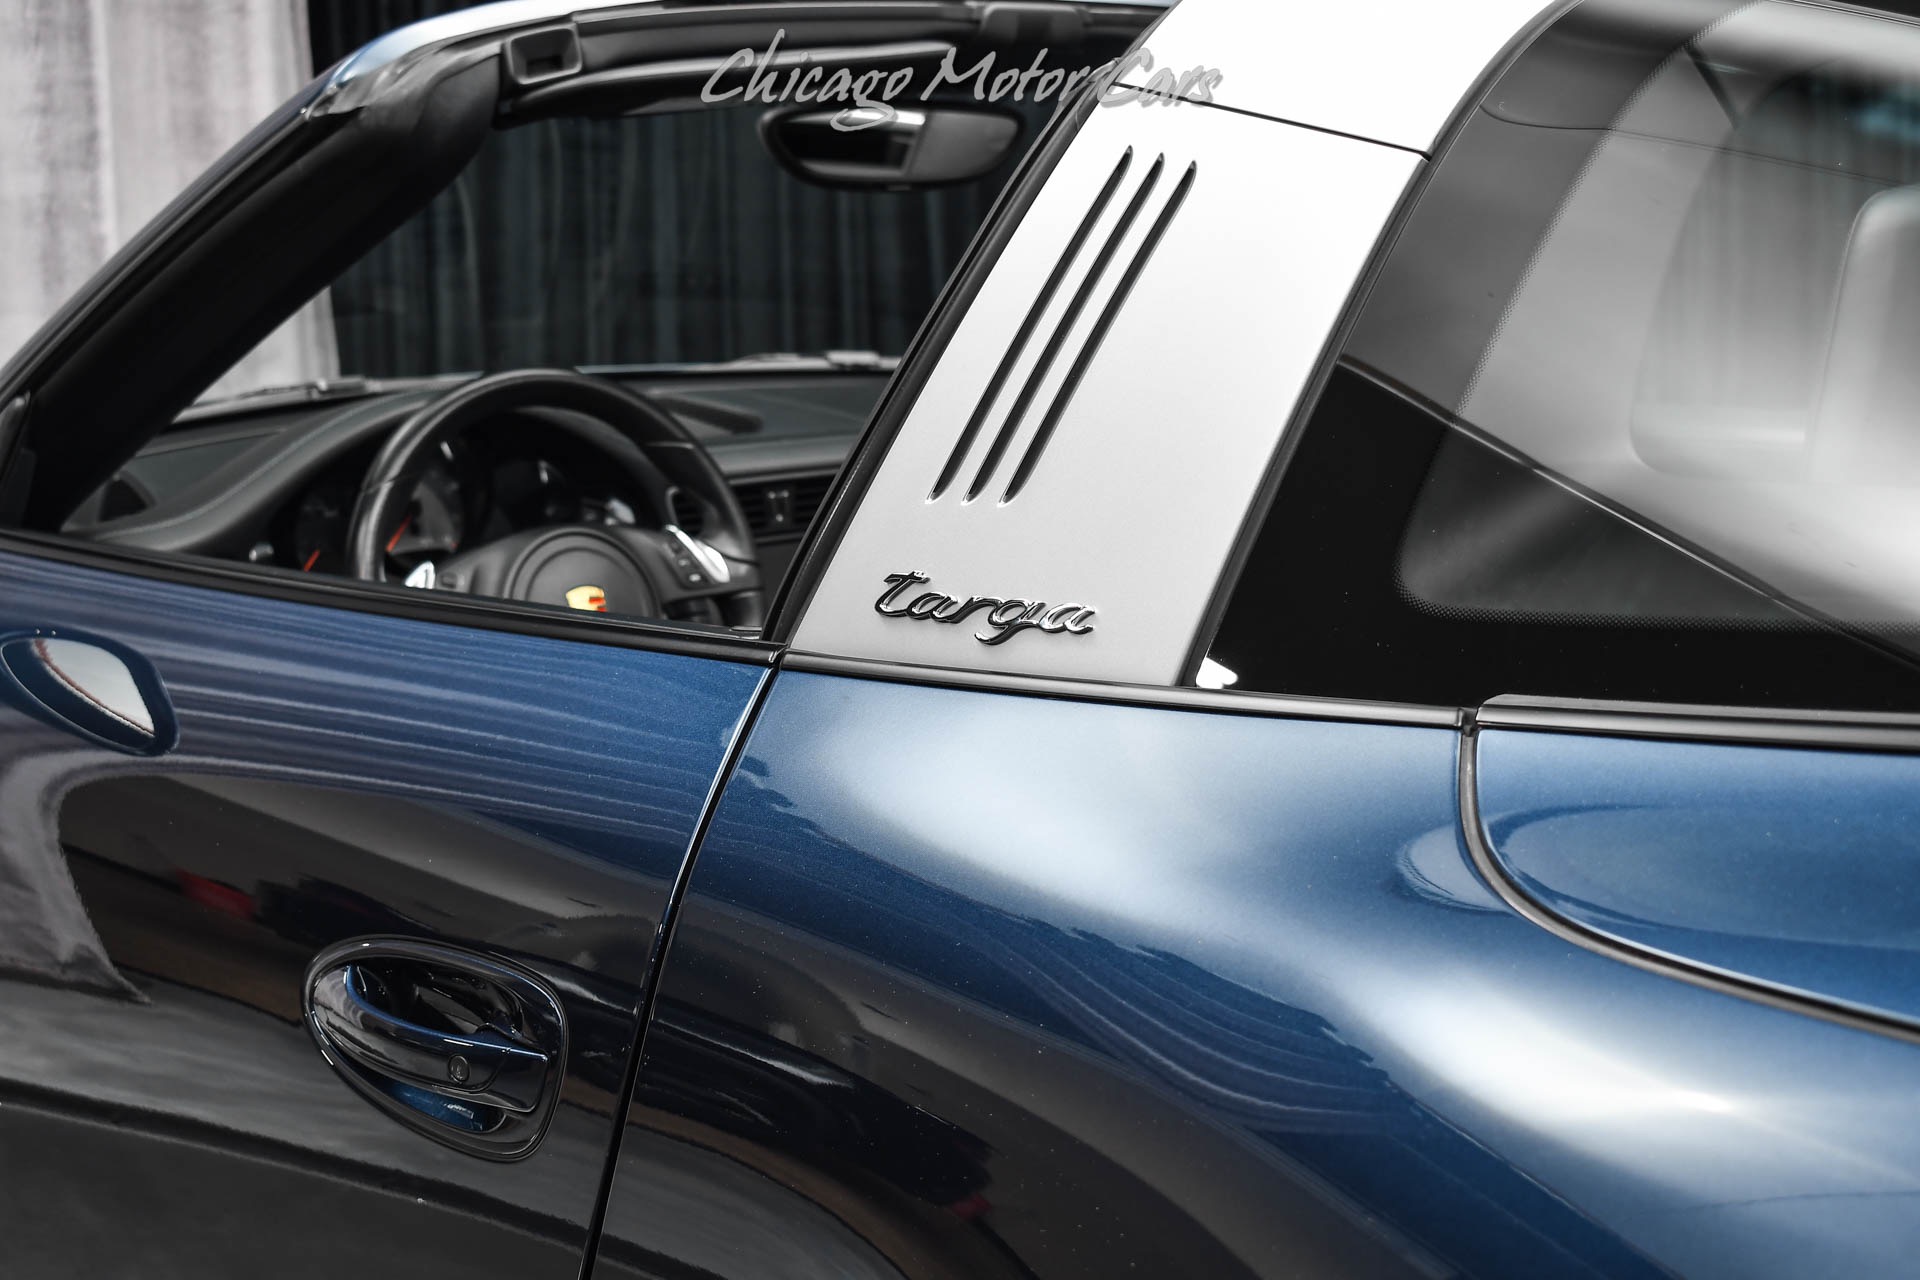 Used-2015-Porsche-911-Targa-4S-Premium-Pkg-Plus-Stunning-Spec-14-Way-Seats-Audio-Pkg-PDK